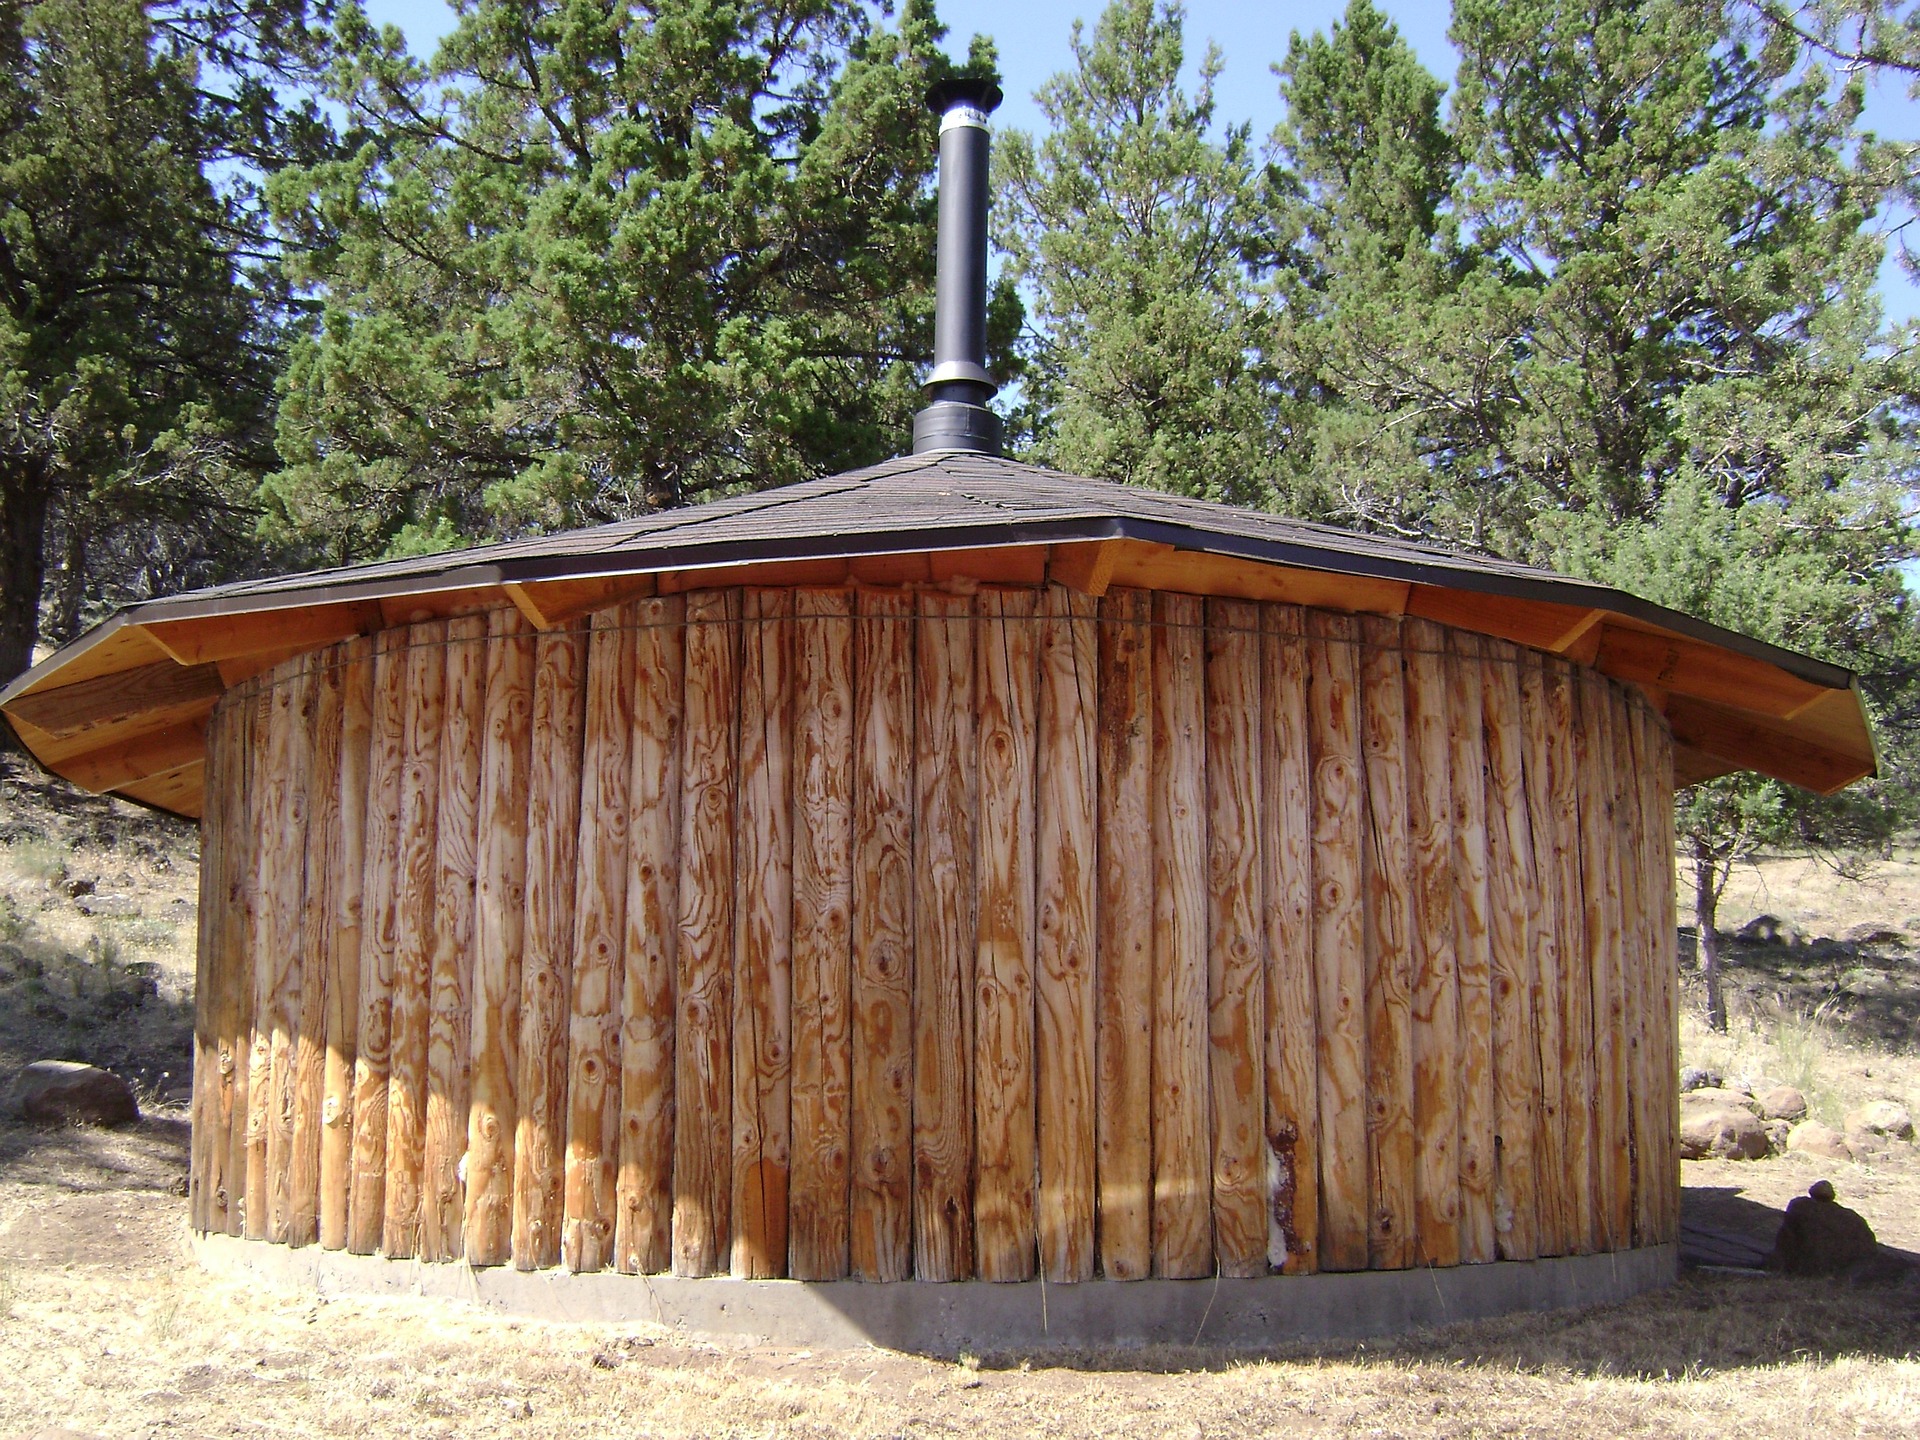 Nahaufnahme einer runden Schwitzhütte aus Holz, die von den indianischen Stämmen zur Reinigung verwendet wird. Das Holz ist dunkelbraun und das Dach hat eine Kuppelform. Die Hütte steht auf Sand und im Hintergrund sind Nadelbäume zu sehen.